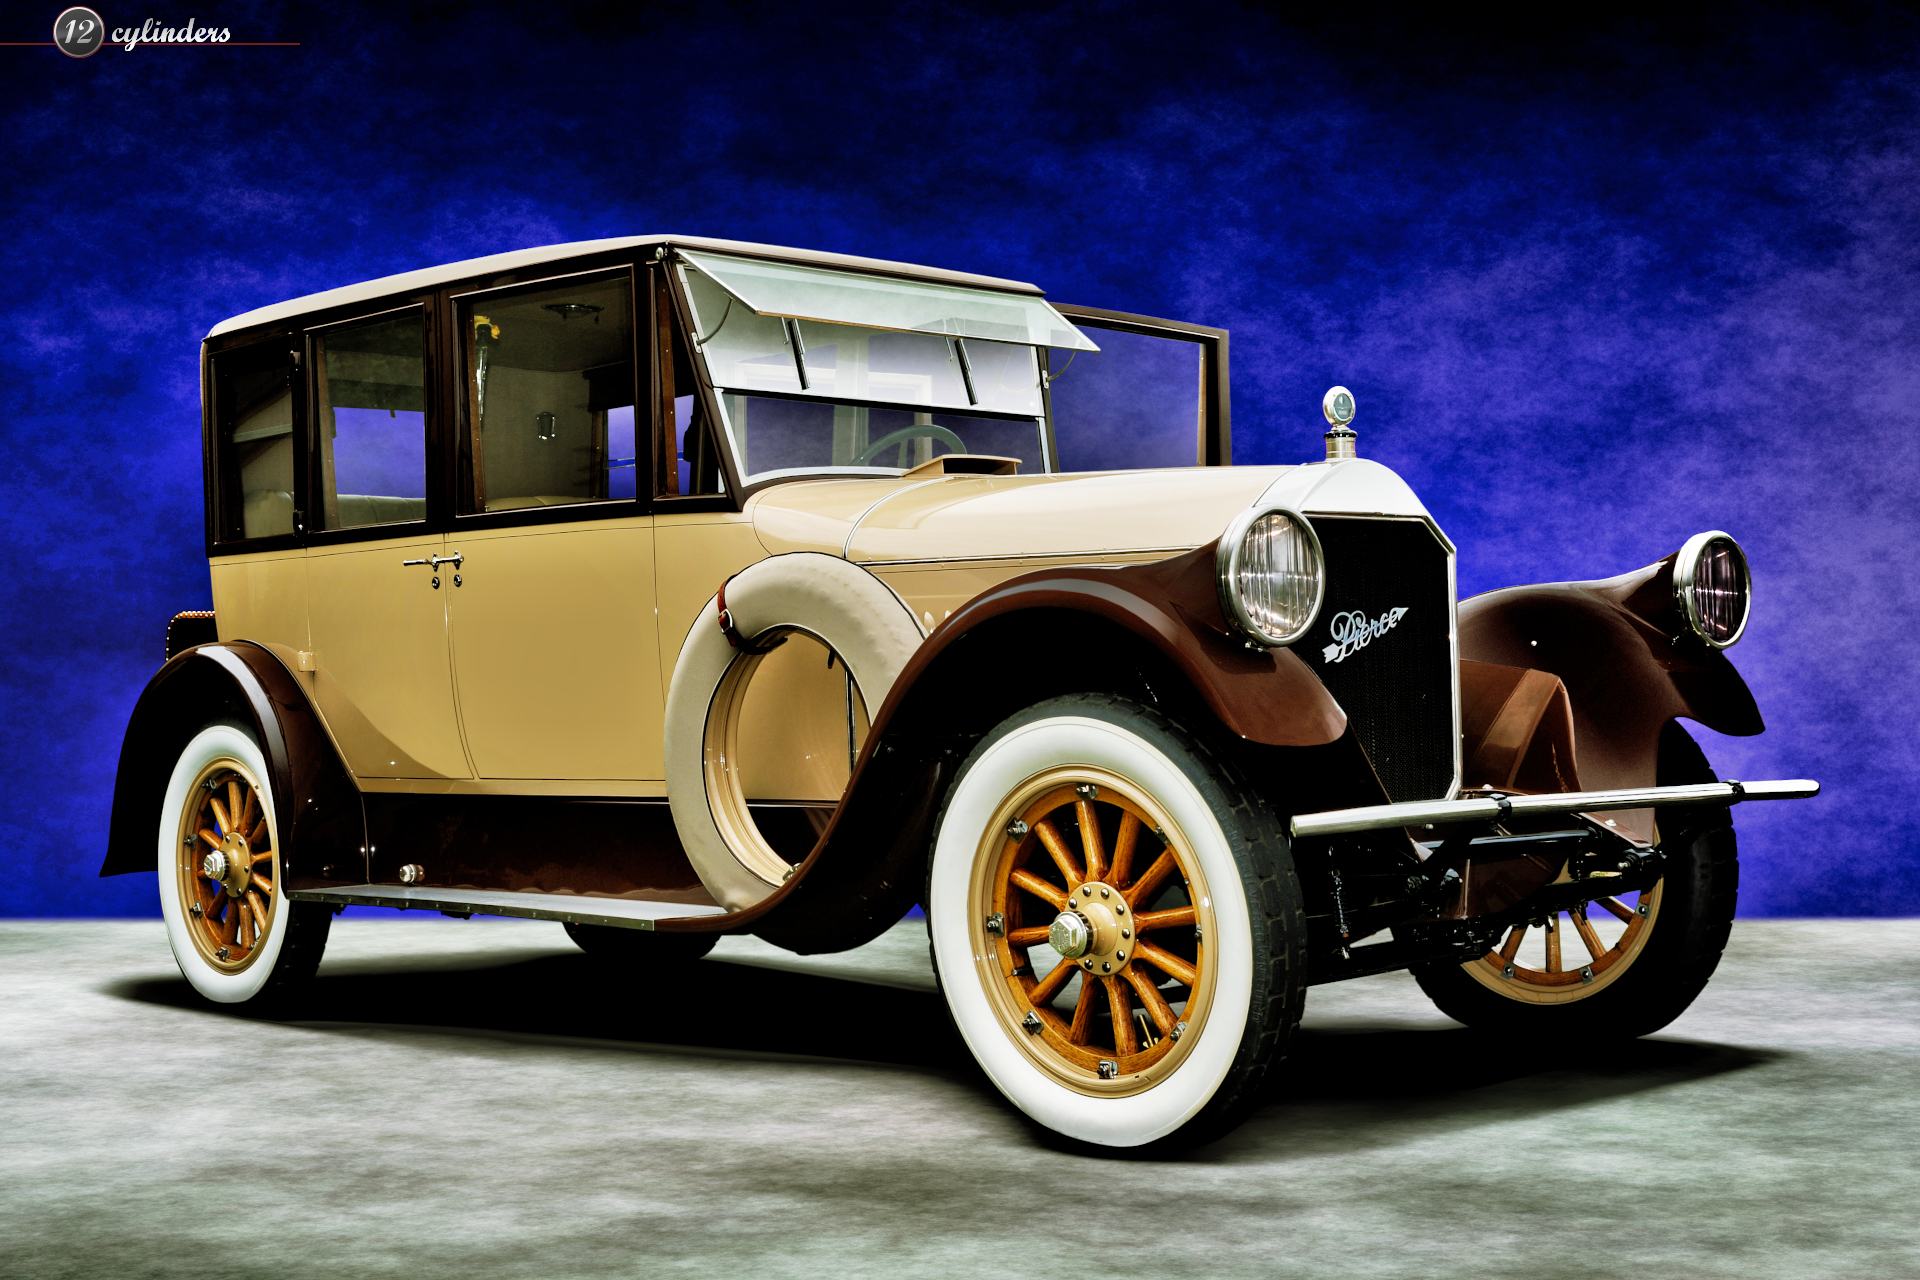 Main, Pierce-Arrow Model 33 Touring Sedan, #332157, 1922